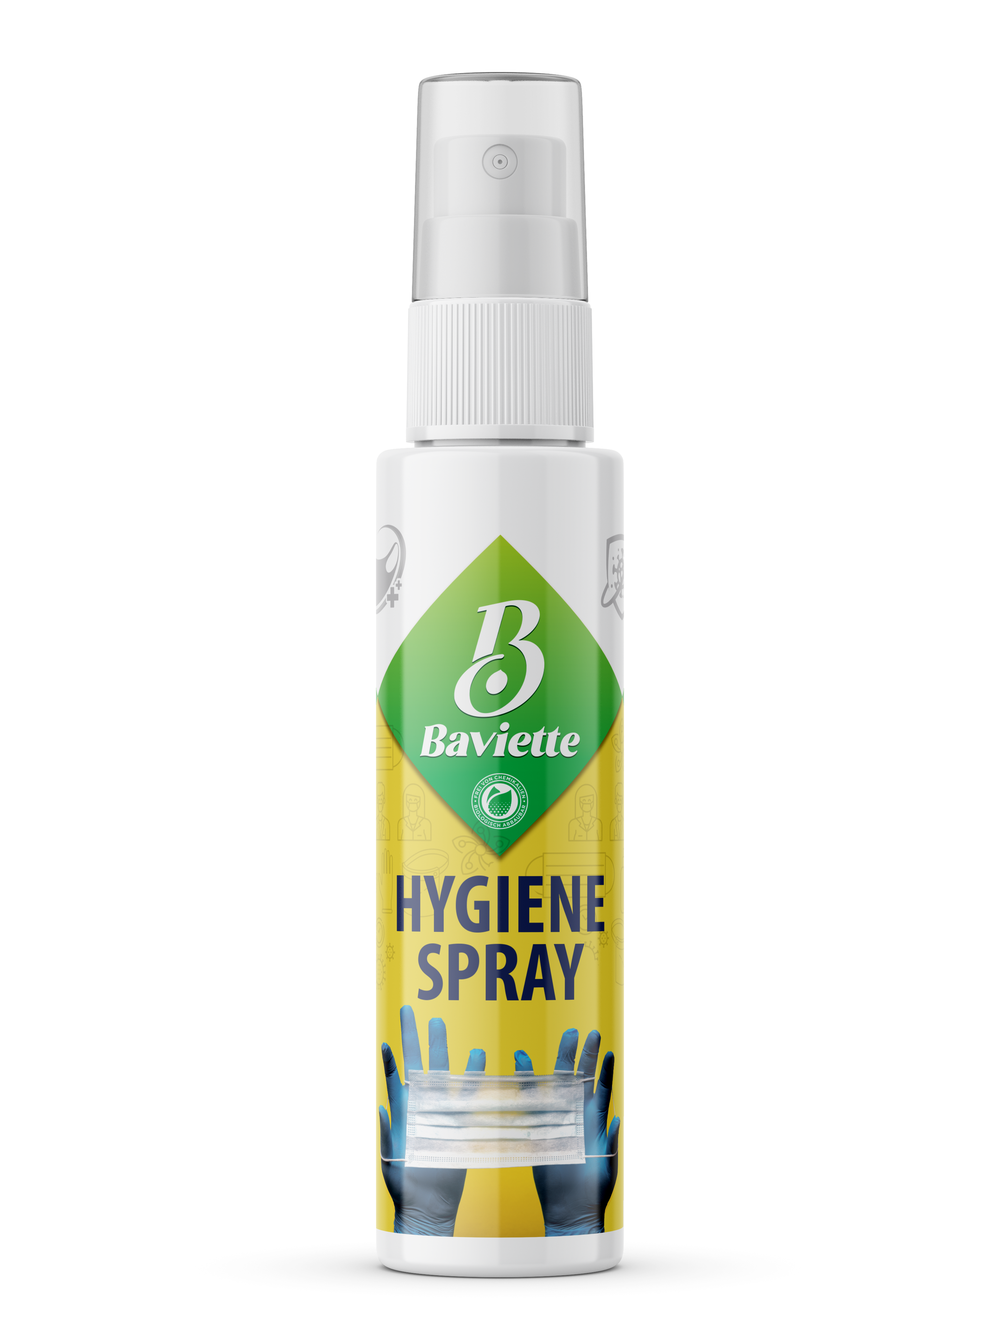 Hygiene spray pocket spray